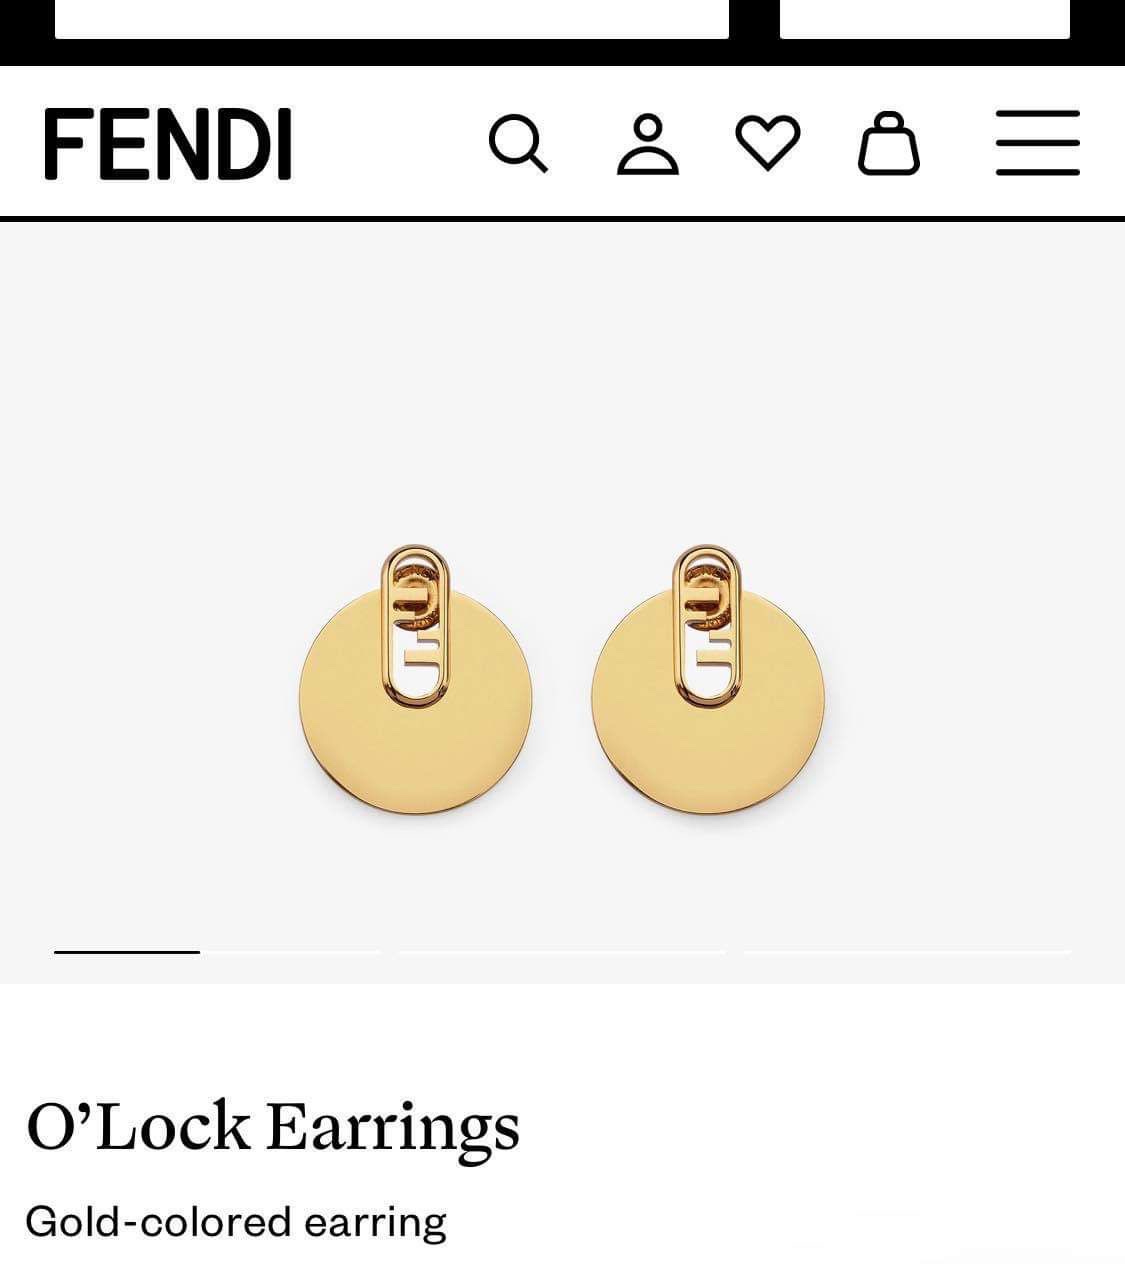 Fendi earrings